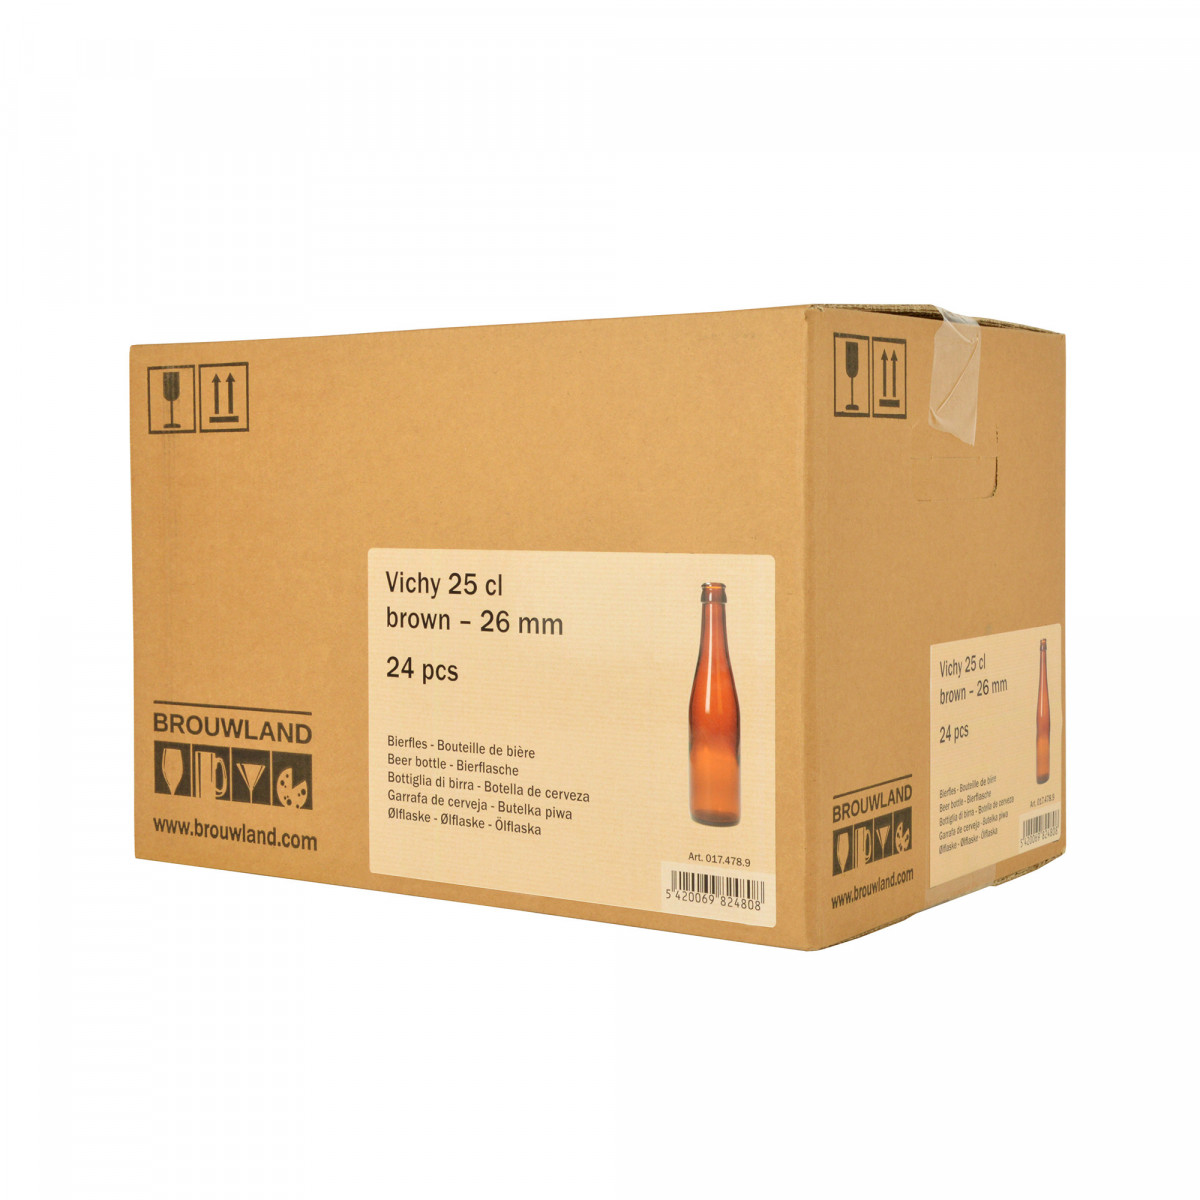 Bouteille de bière Vichy 25 cl, brun, 26 mm, boîte 24 pcs